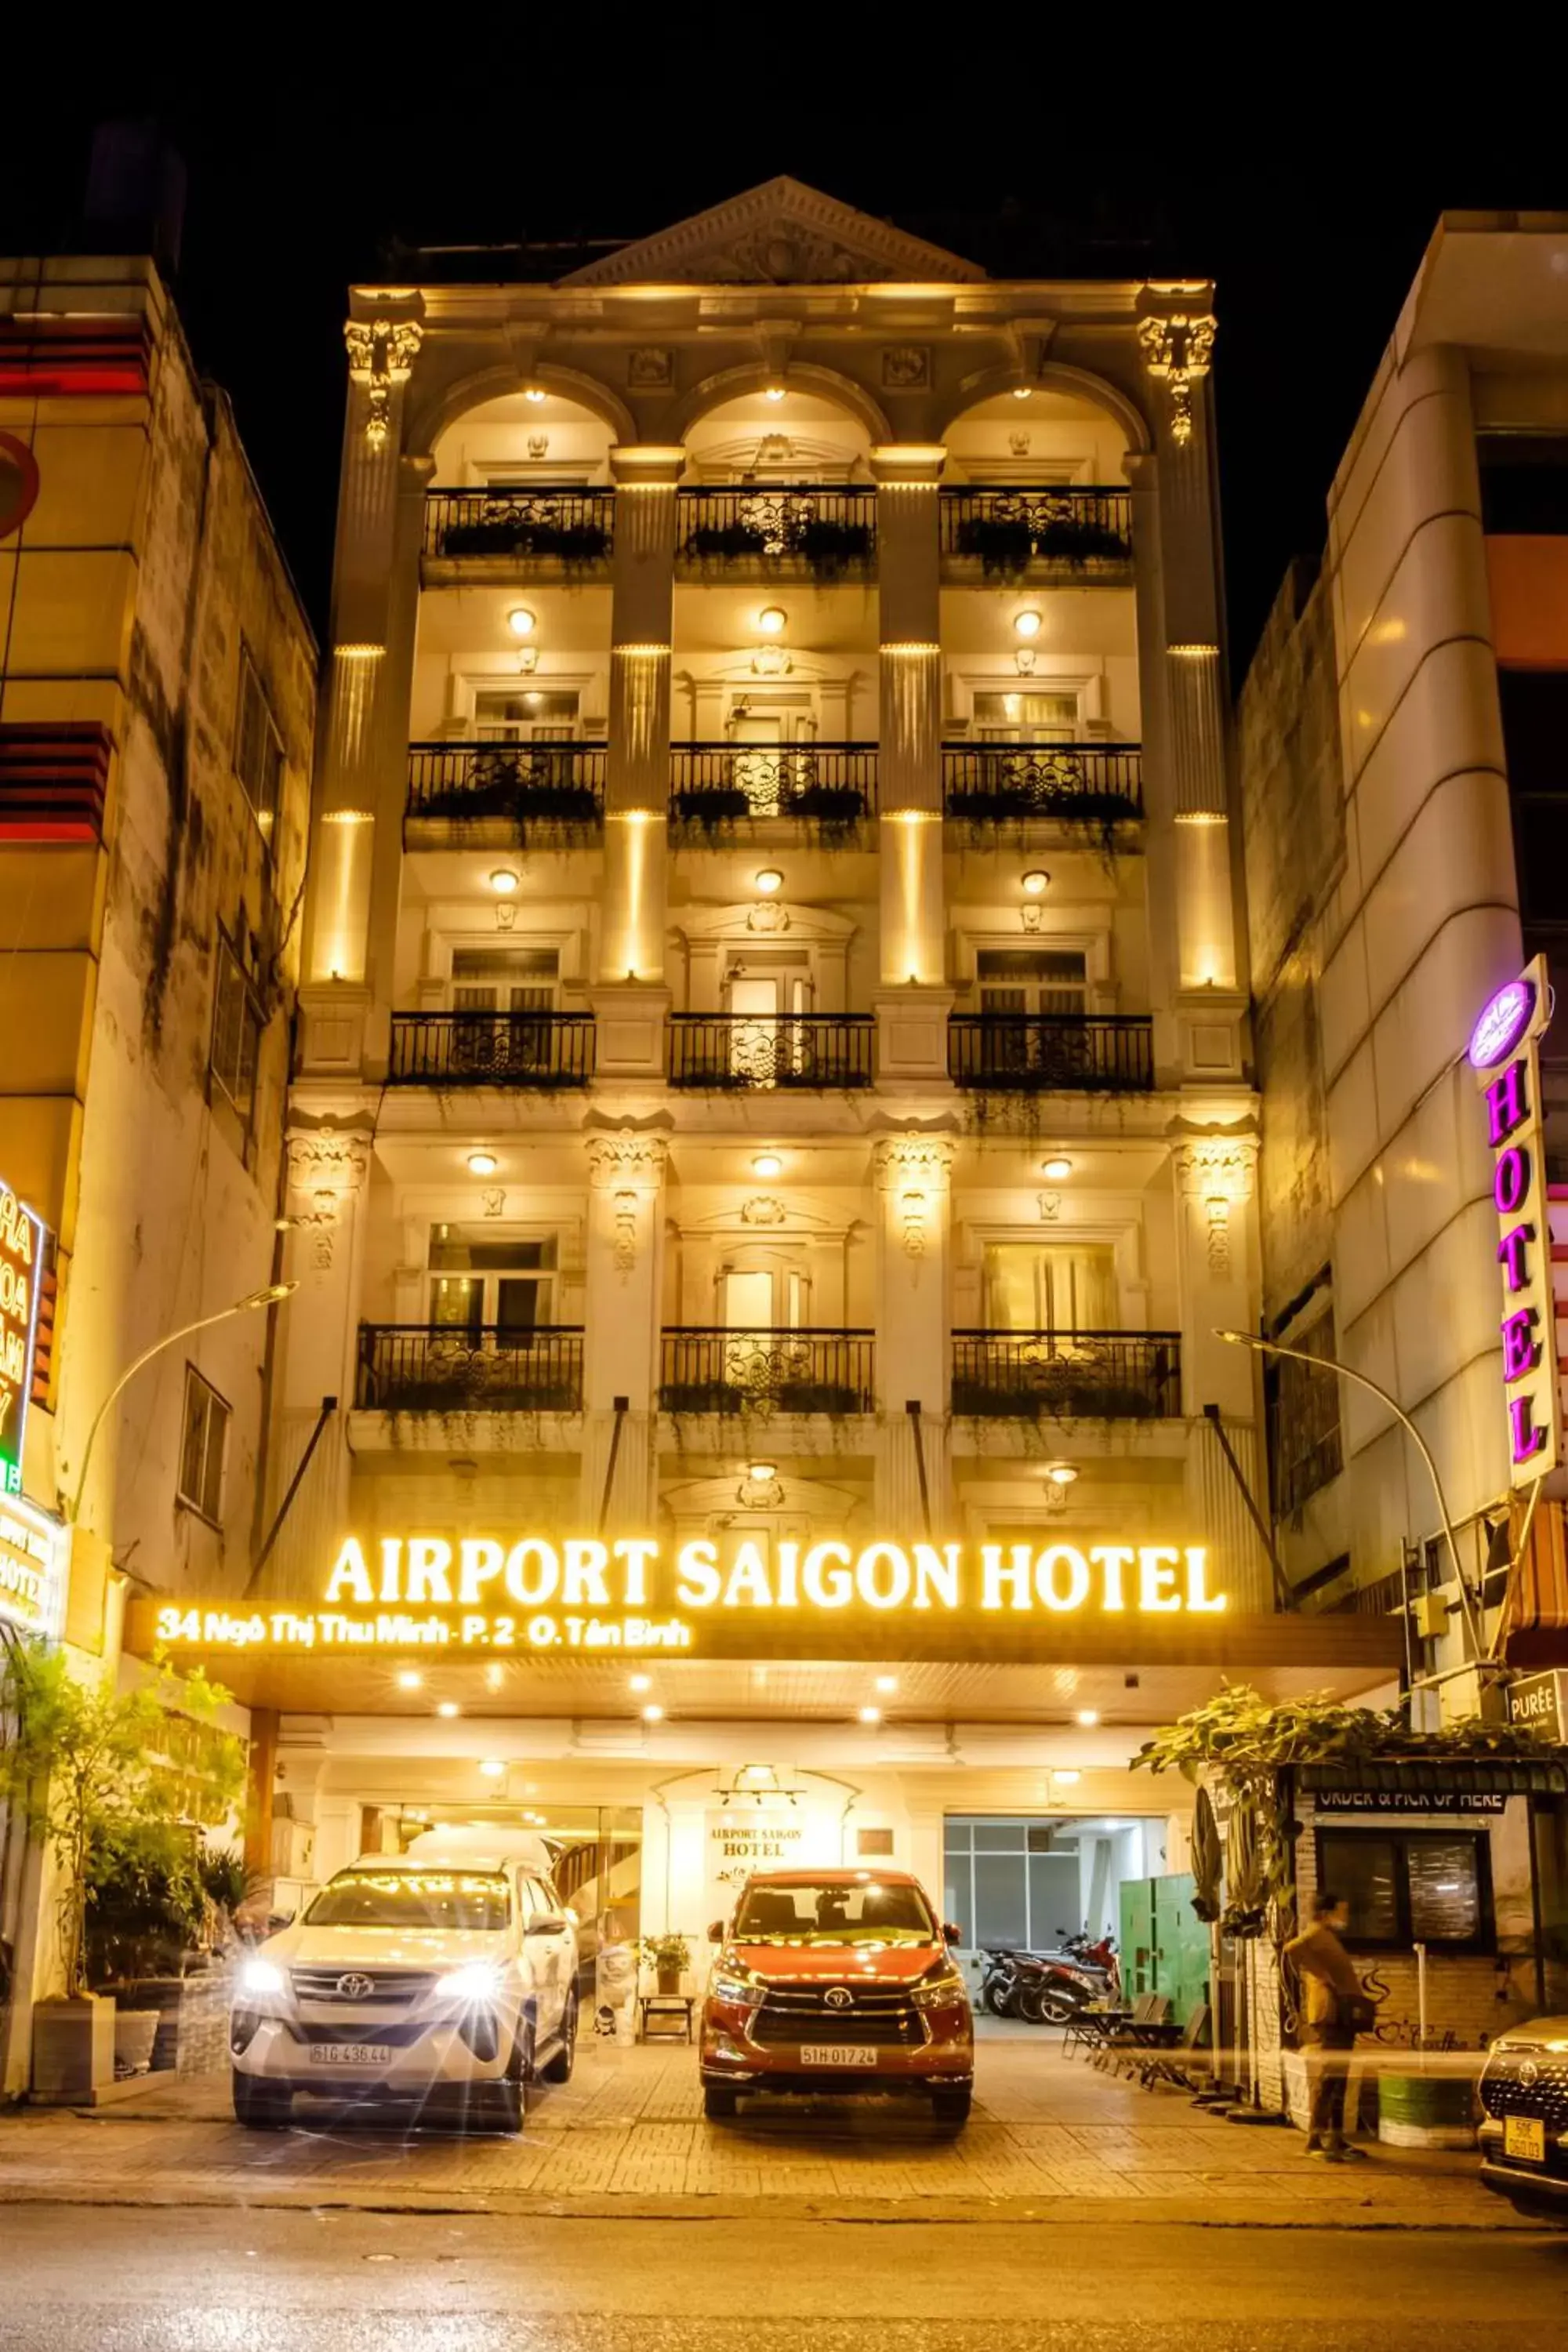 Property Building in Airport Saigon Hotel - Gần ẩm thực đêm chợ Phạm Văn Hai